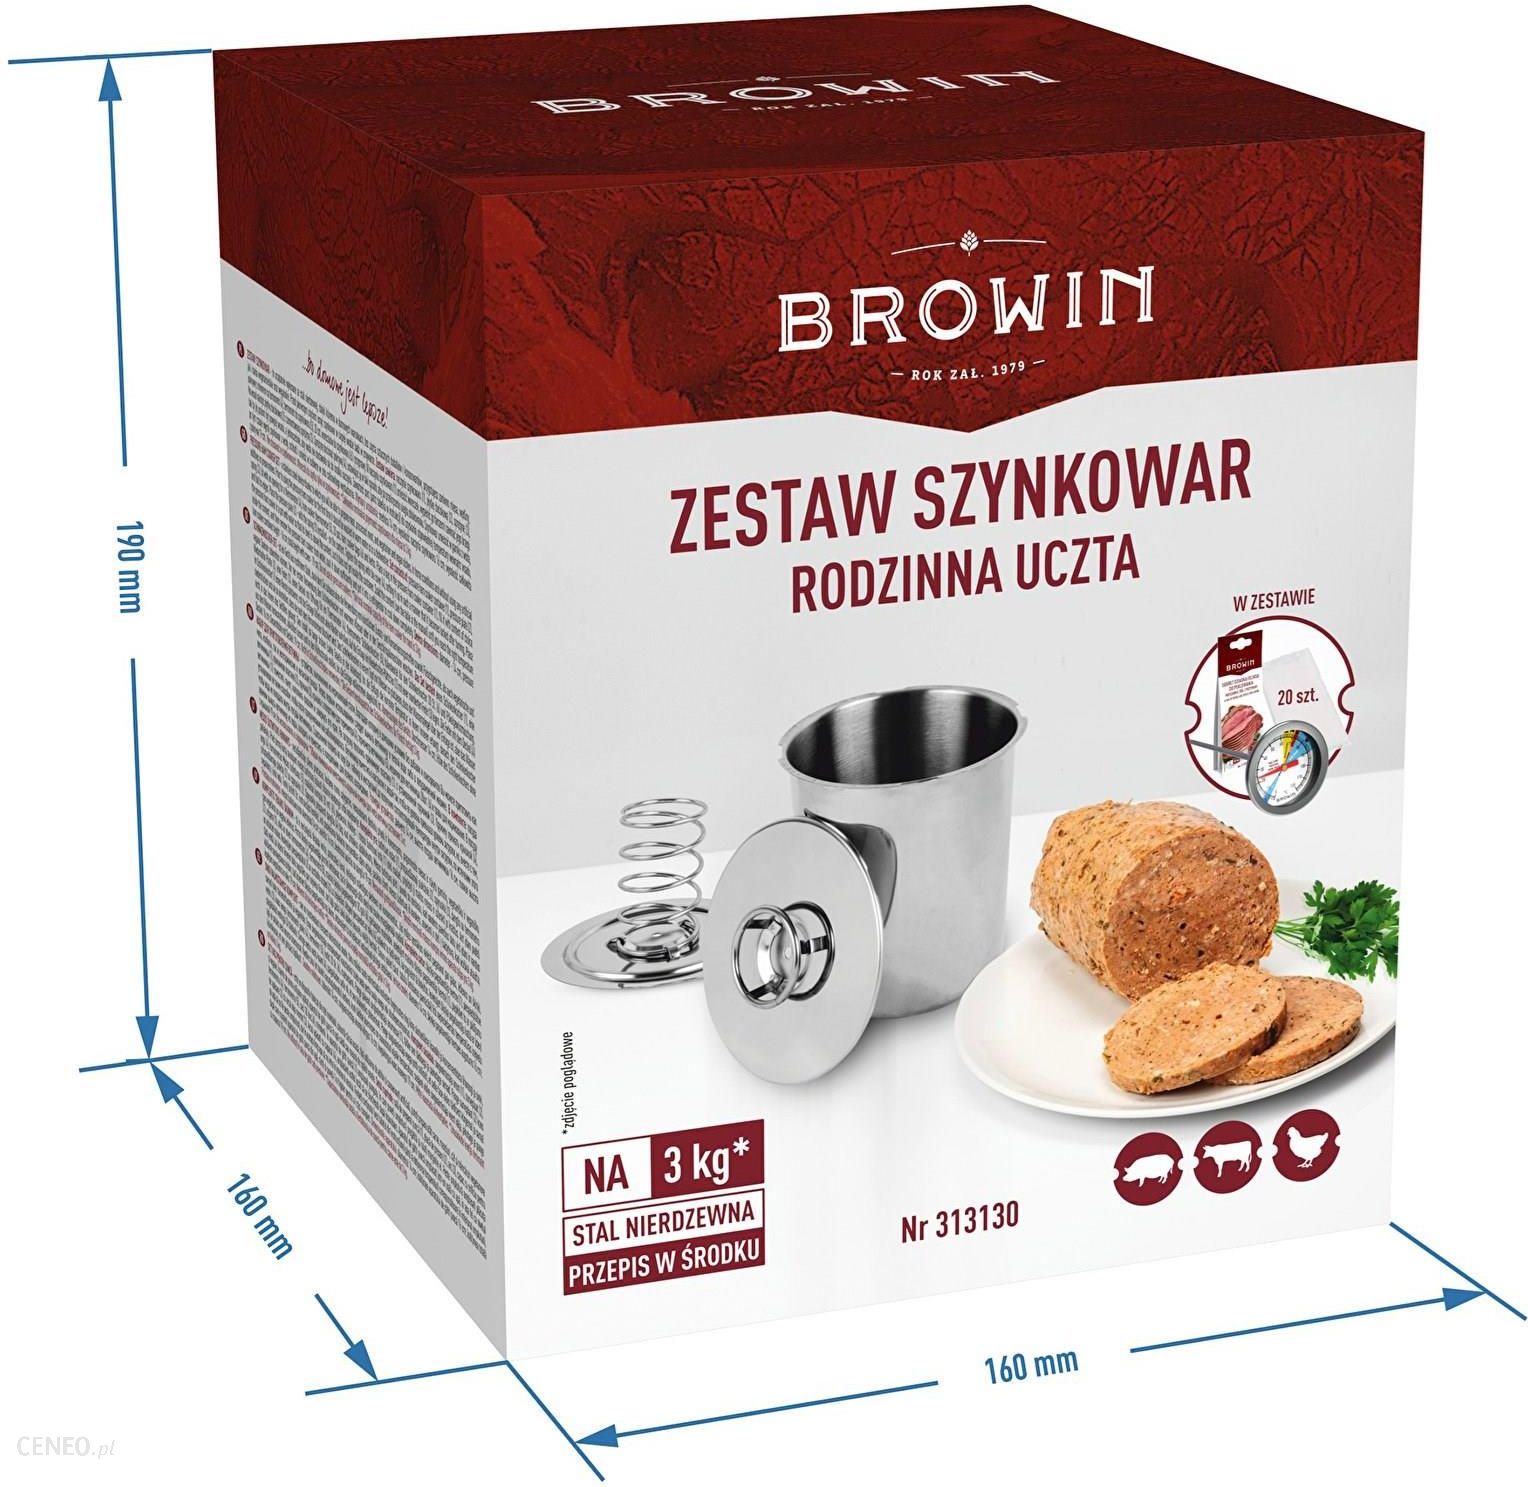 BROWIN Szynkowar Zestaw - Rodzinna uczta 3kg (313130)